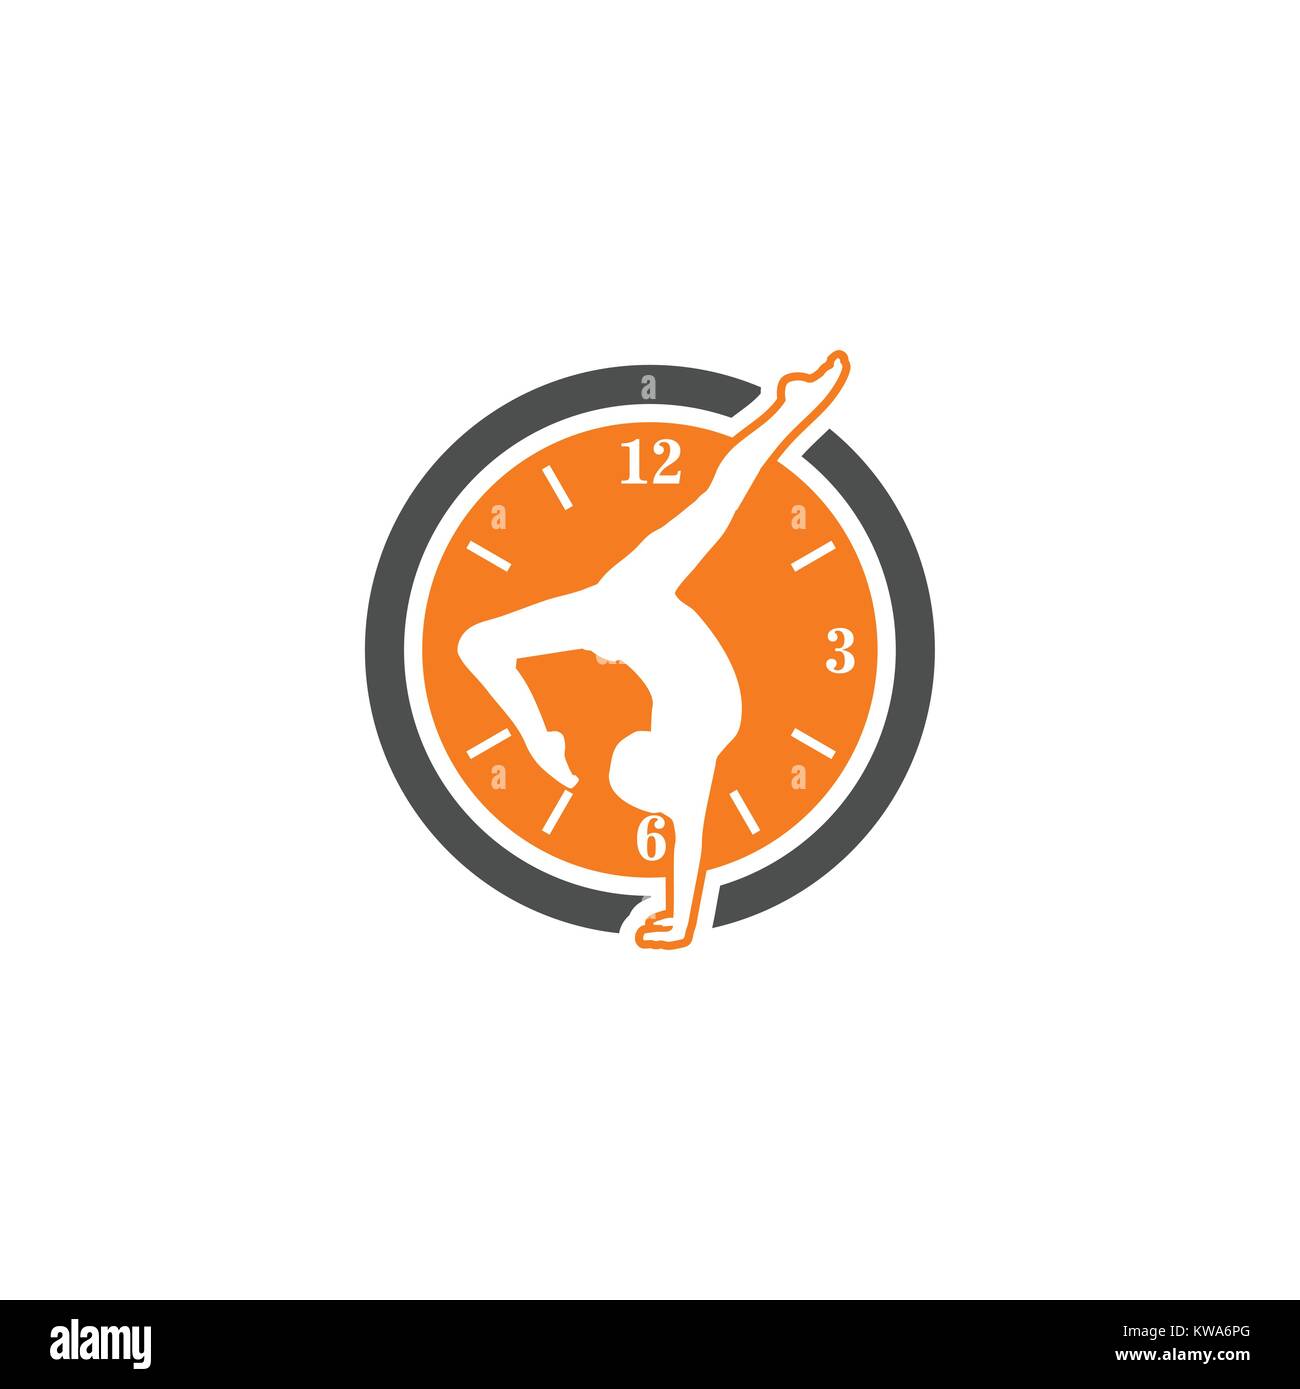 clock gym vector logo Stock Vector